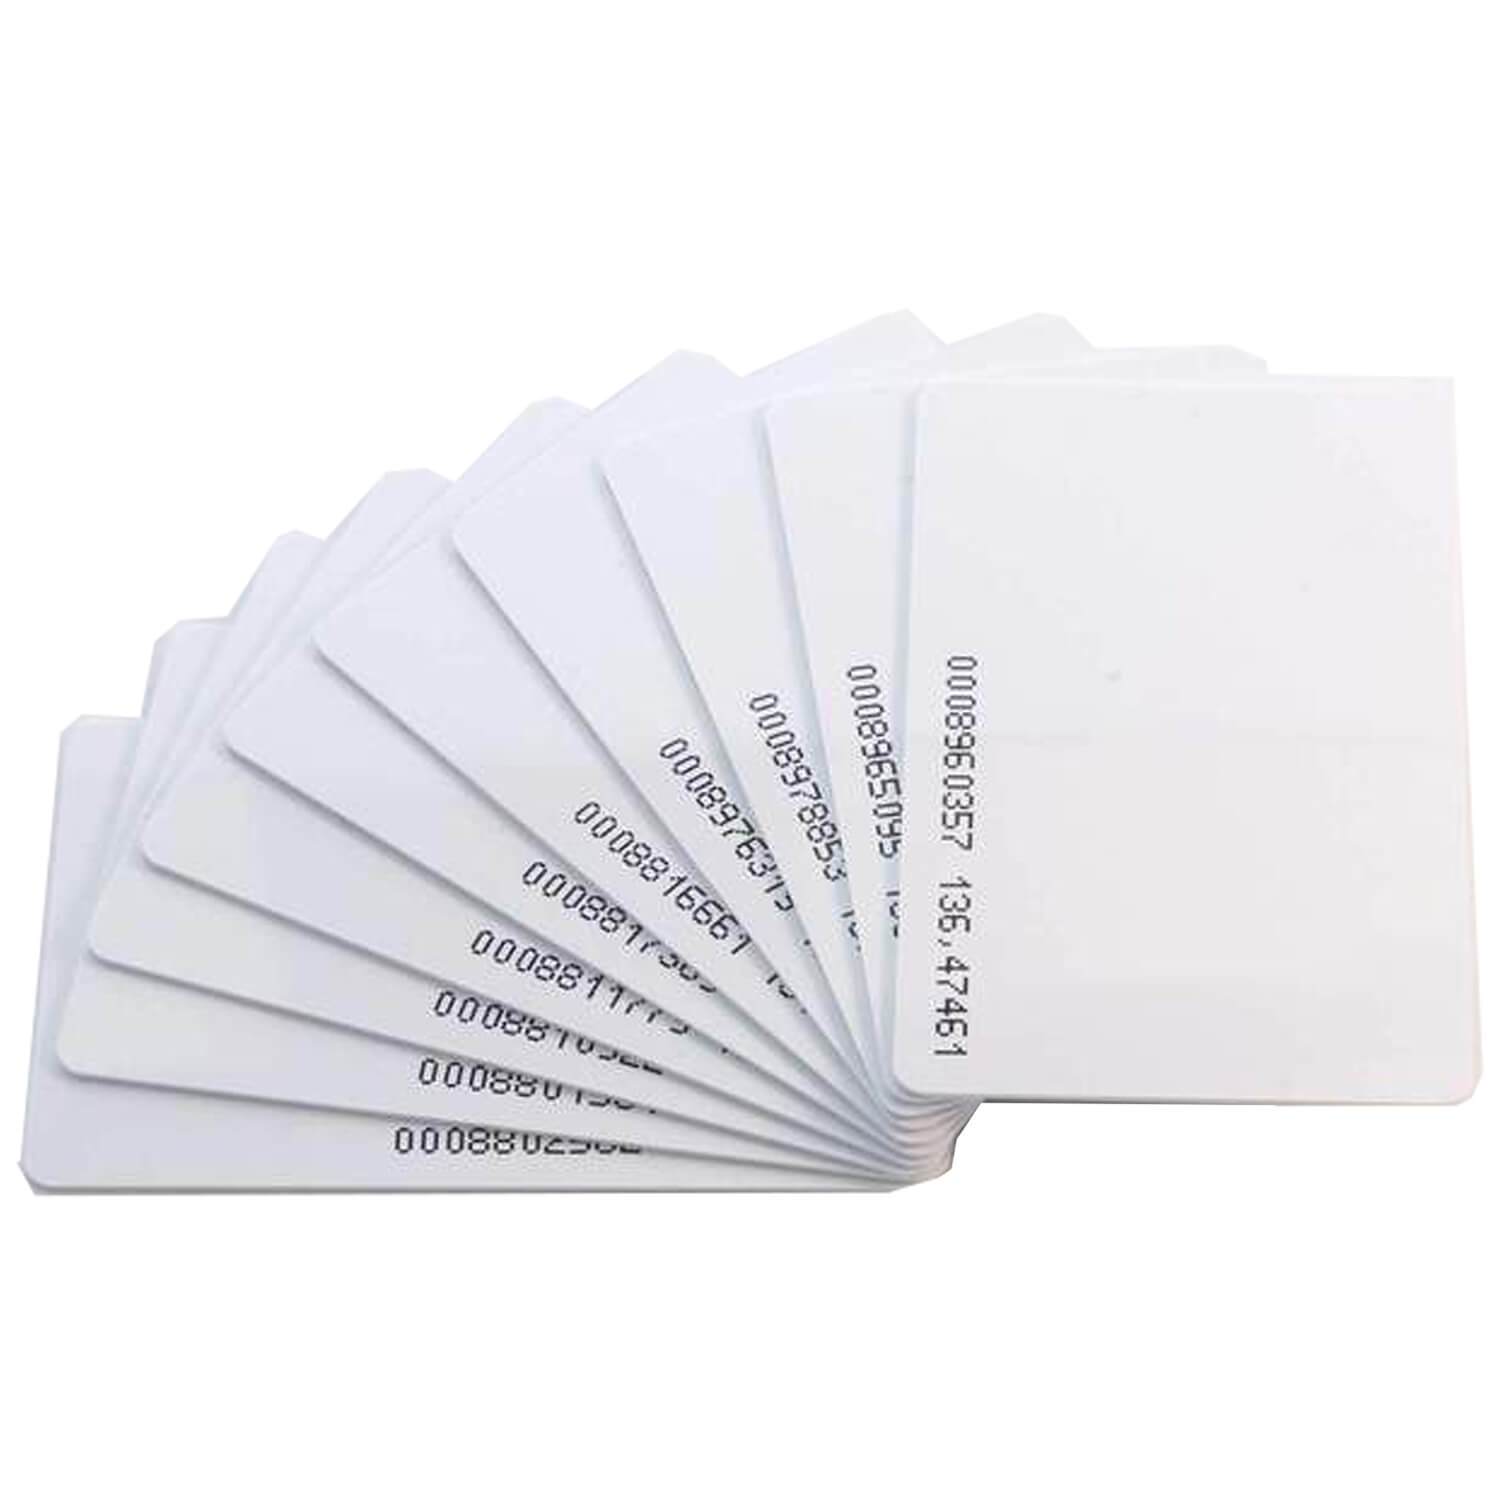 RFID Card Keycard/Schlüsselkarte 125KHz weiß, durchnummeriert - AZ-Delivery